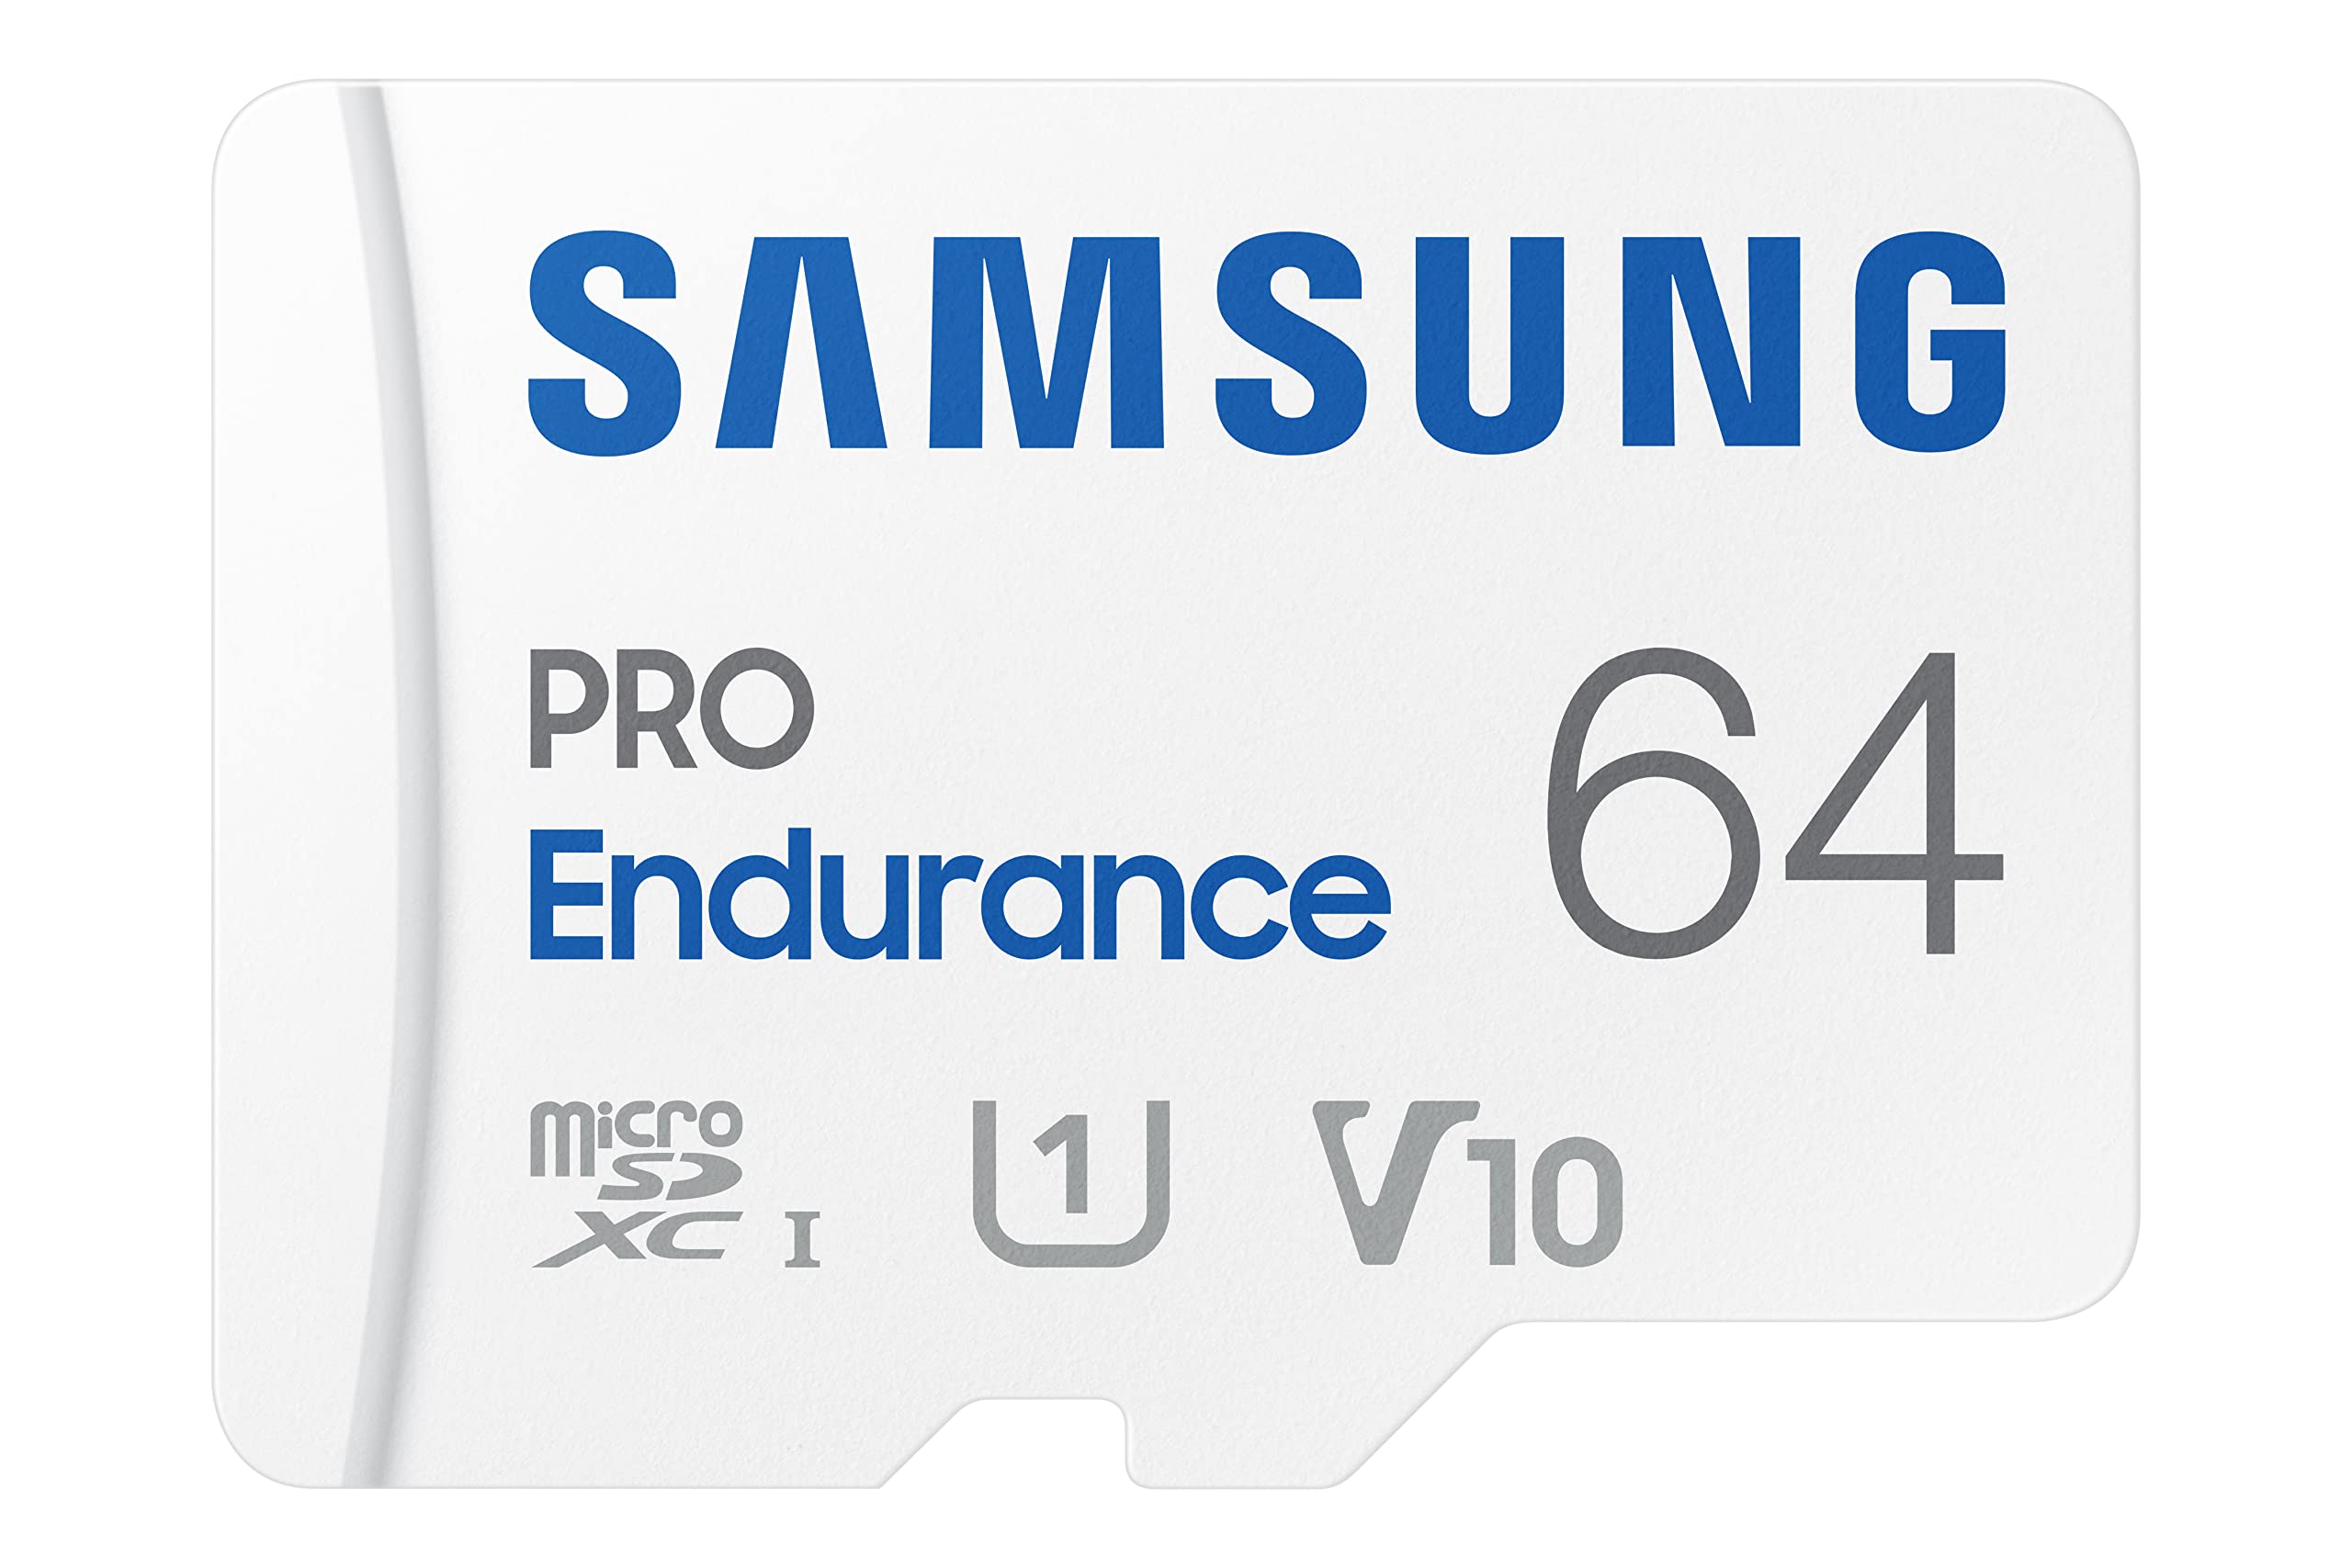 Amazon.com: SAMSUNG PRO Endurance 64GB MicroSDXC Memory Card with Adapter for Dash Cam, Body Cam, and security camera – Class 10, U1, V10 $8